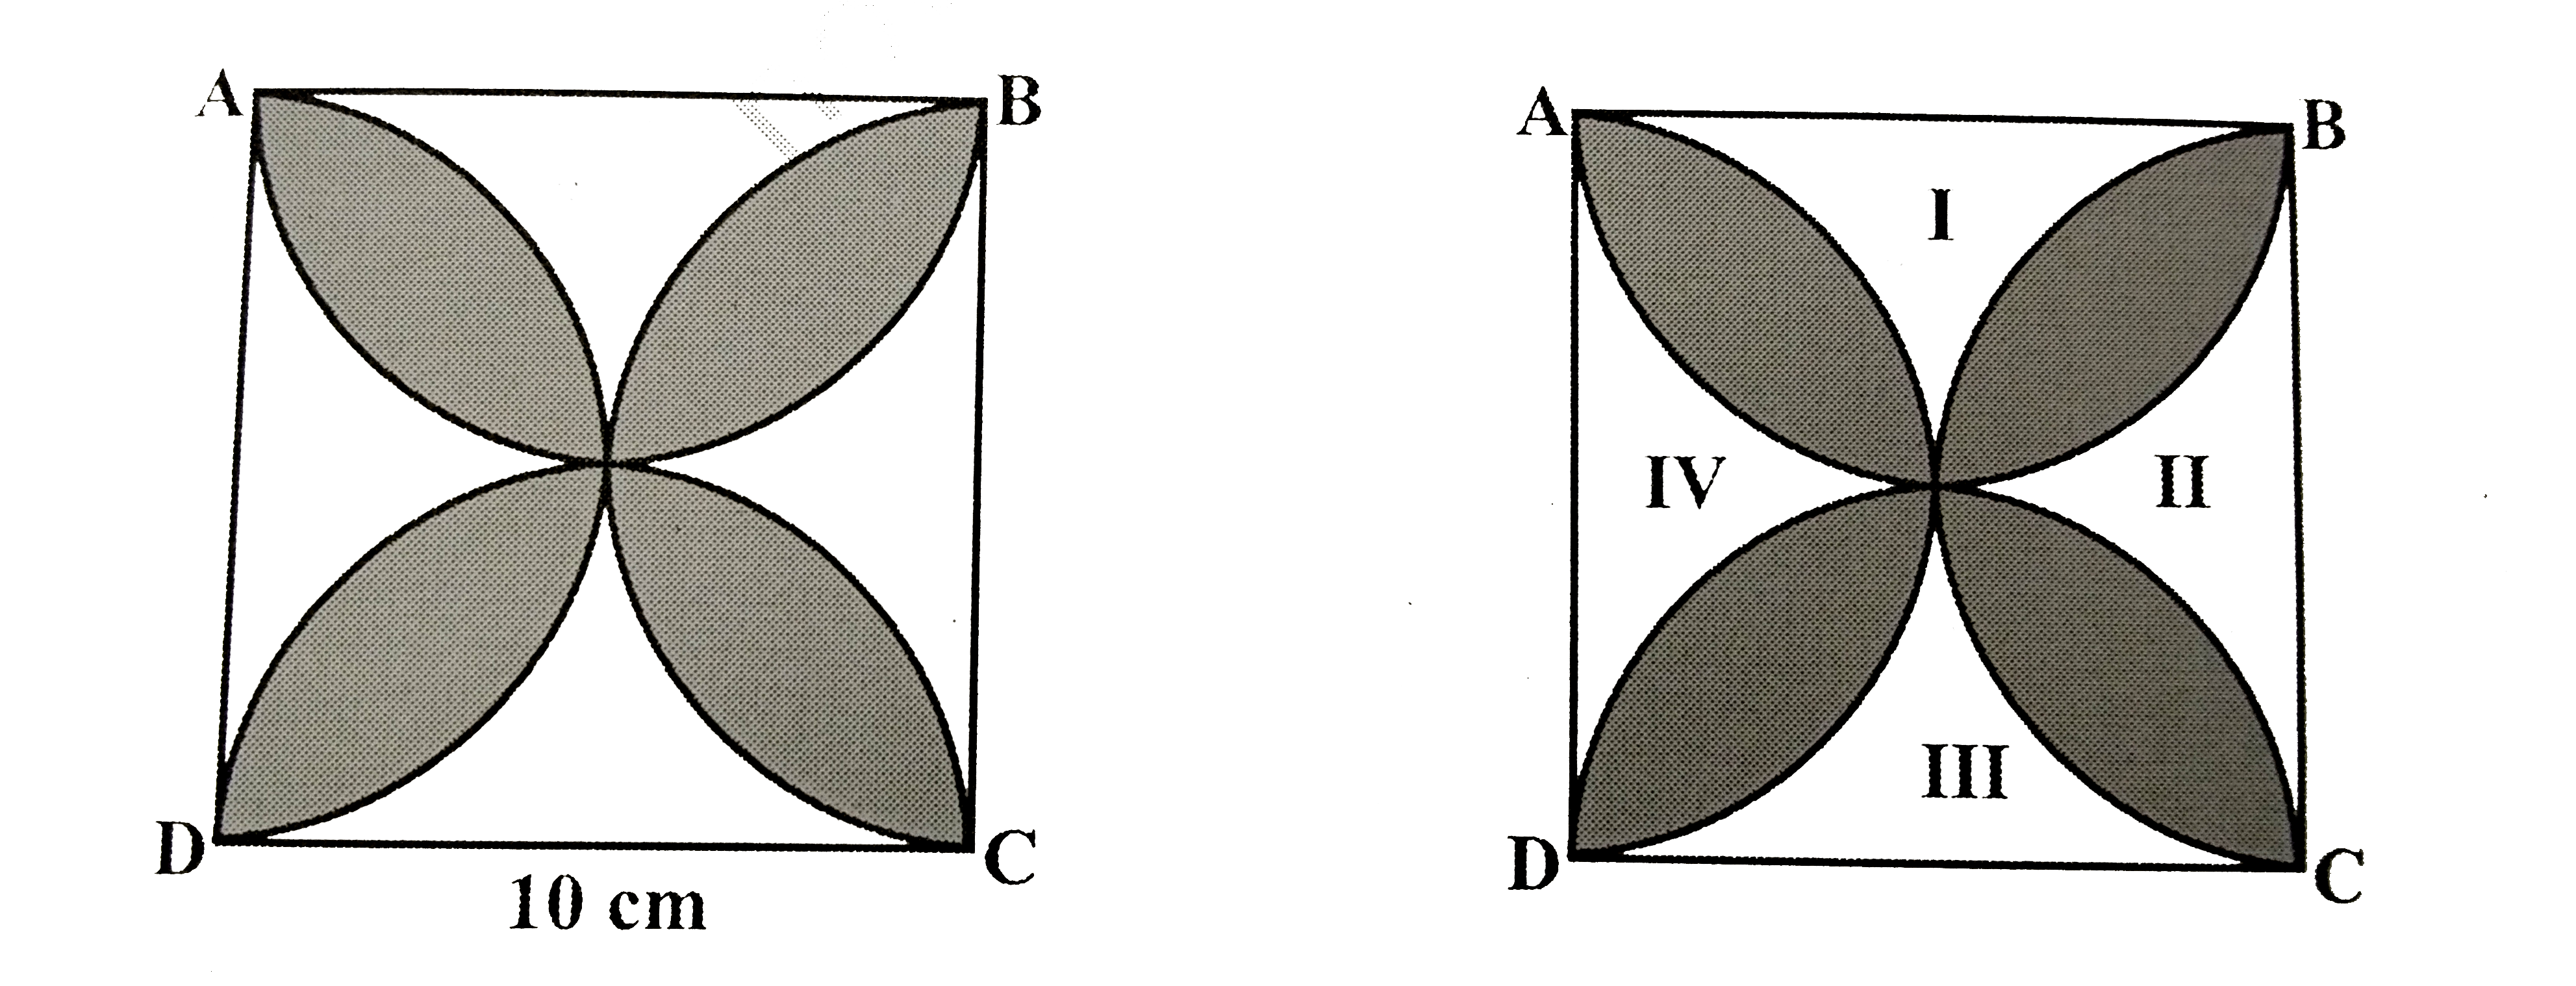 आकृति मे छायांकित डिजाइन का क्षेत्रफल ज्ञात कीजिए जहां ABCD  भुजा 10 cm का एक वर्ग है तथा इस वर्ग की प्रत्येक भुजा को व्यास मान कर कर अर्धवृत्त खींचे गए हैं। (pi=3.14 का प्रयोग कीजिए।)